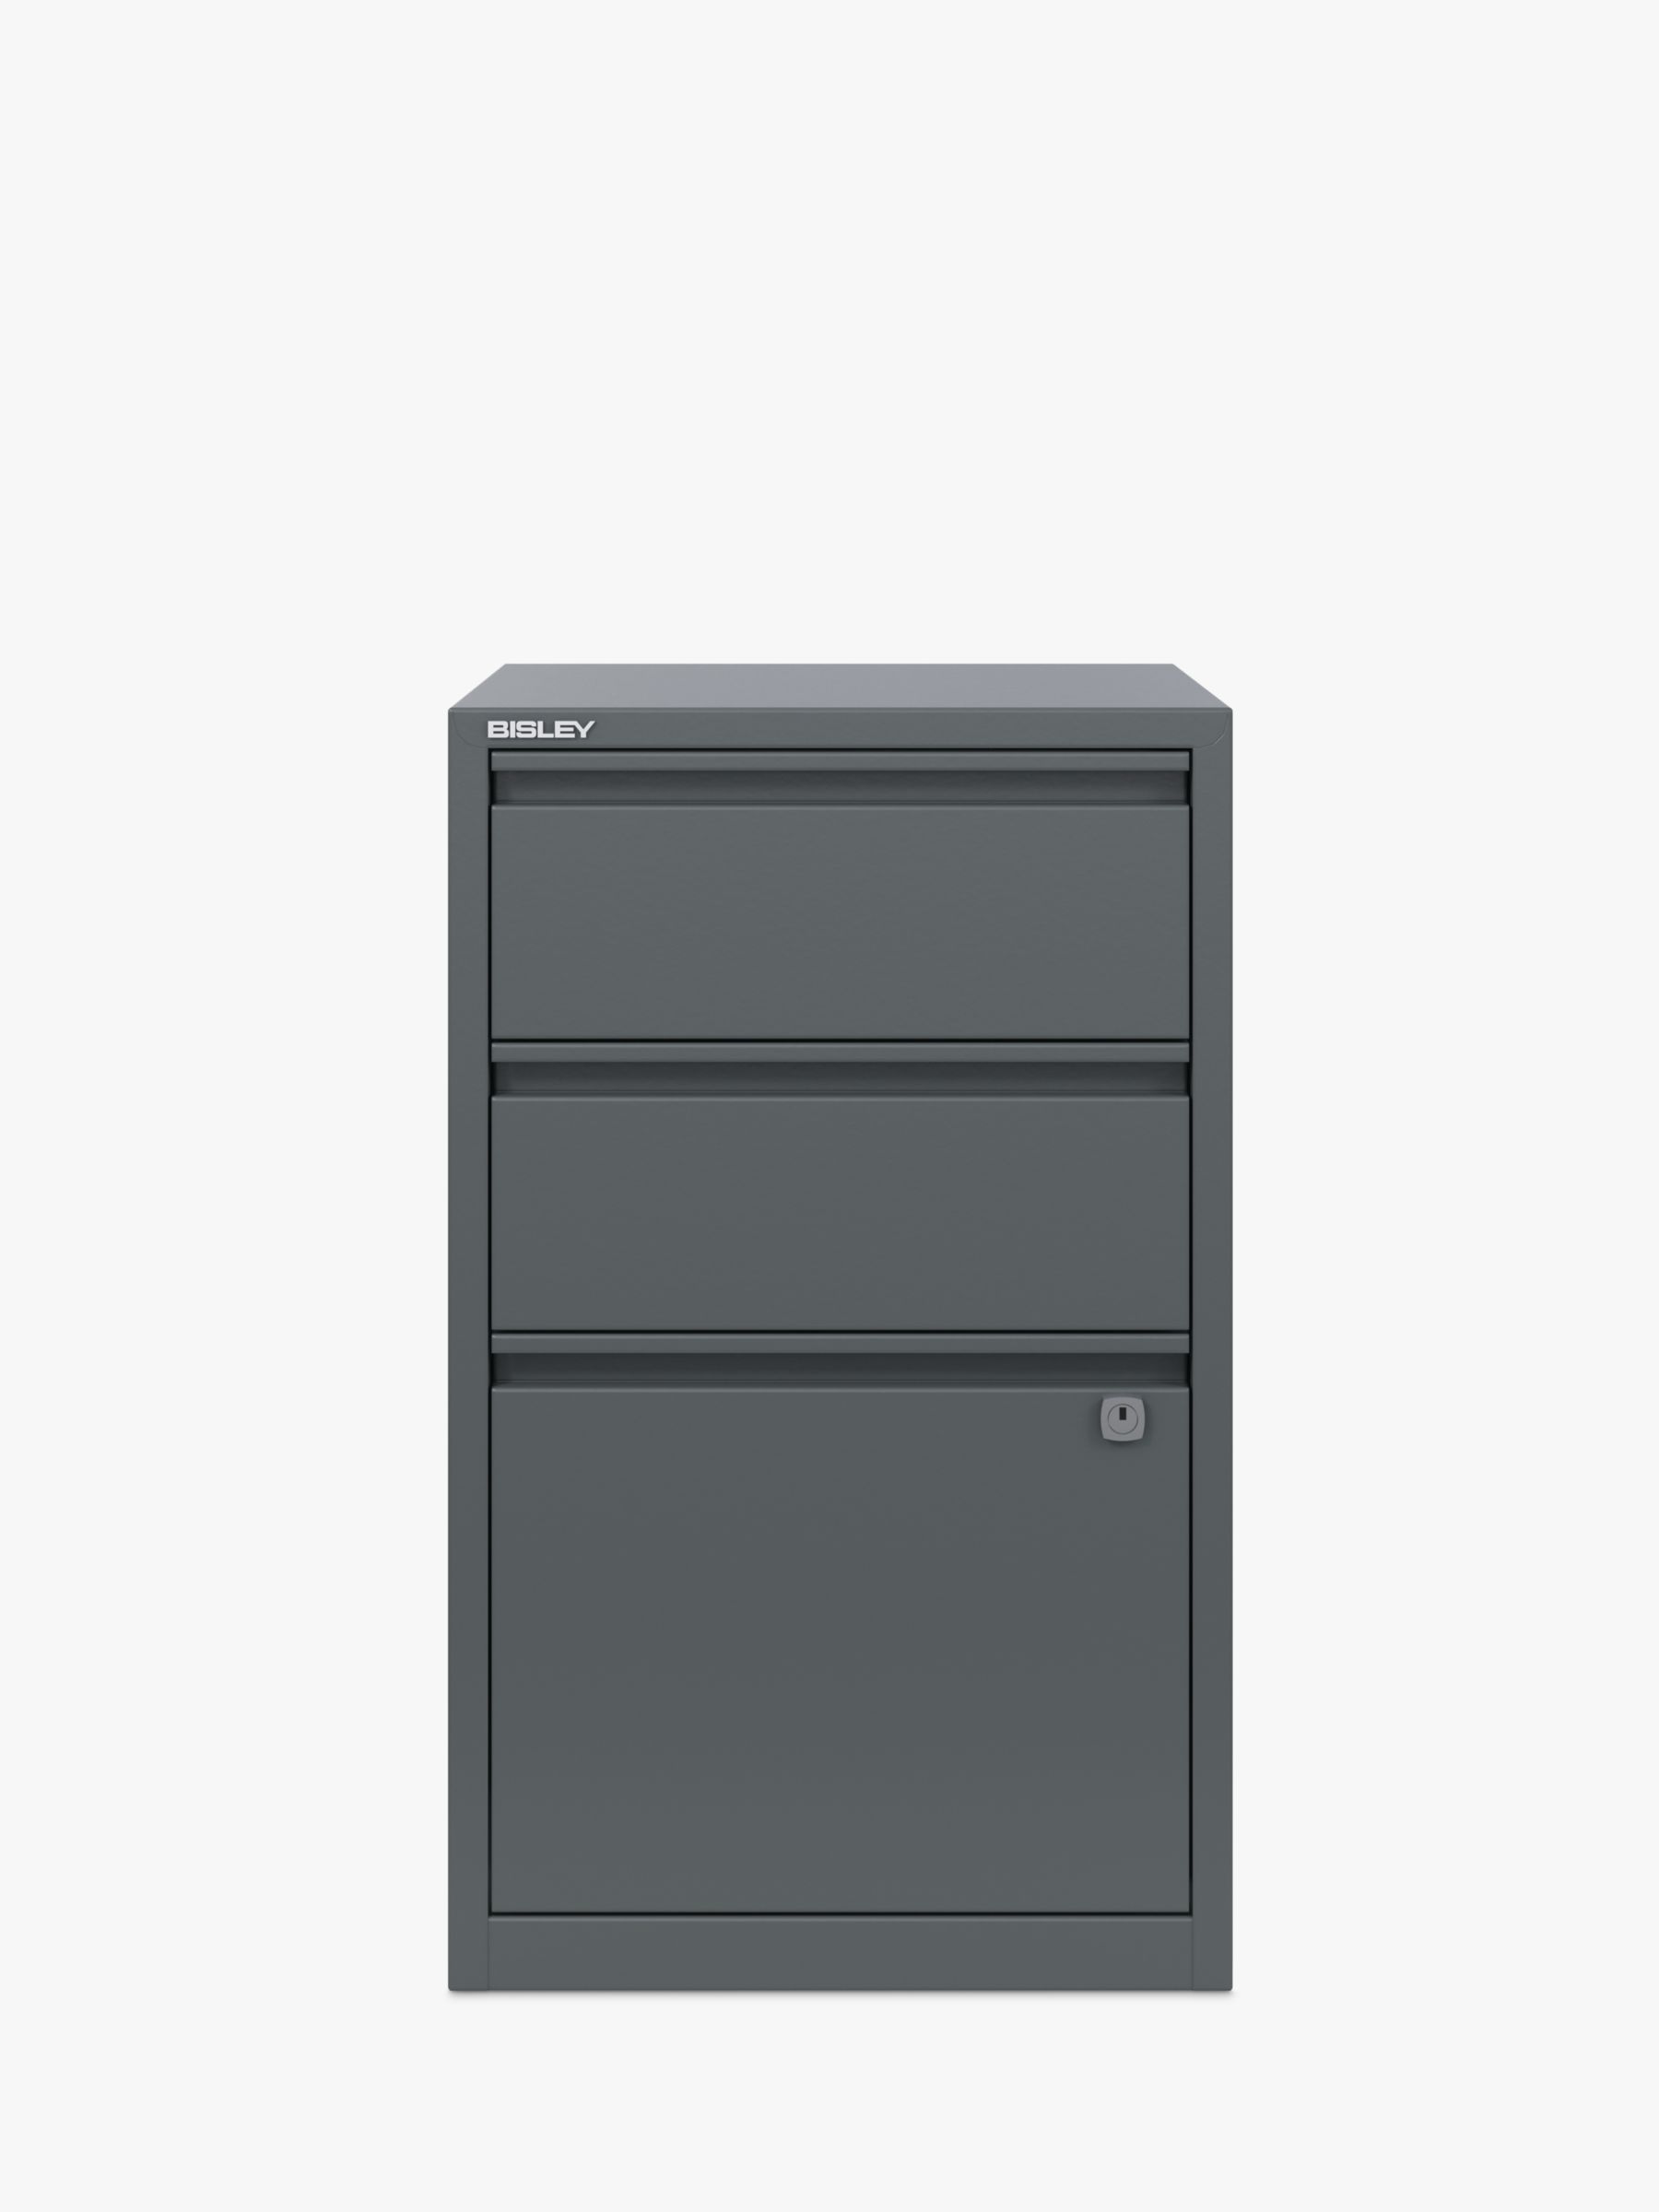 Bisley 3-Drawer Desktop Multidrawer Steel Cabinet Orange